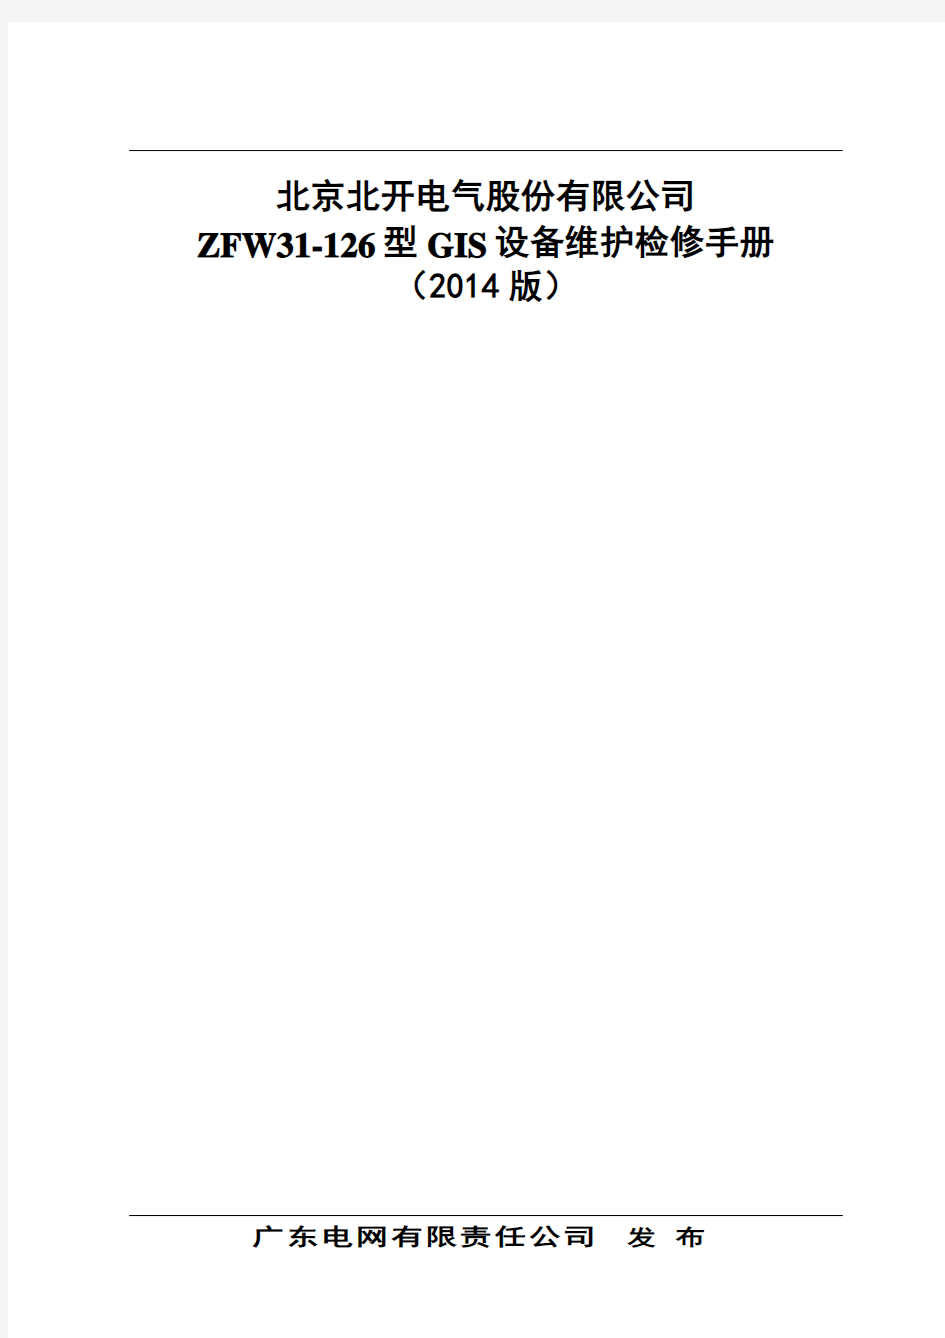 北京北开电气股份有限公司ZFW31-126型GIS设备维护检修手册